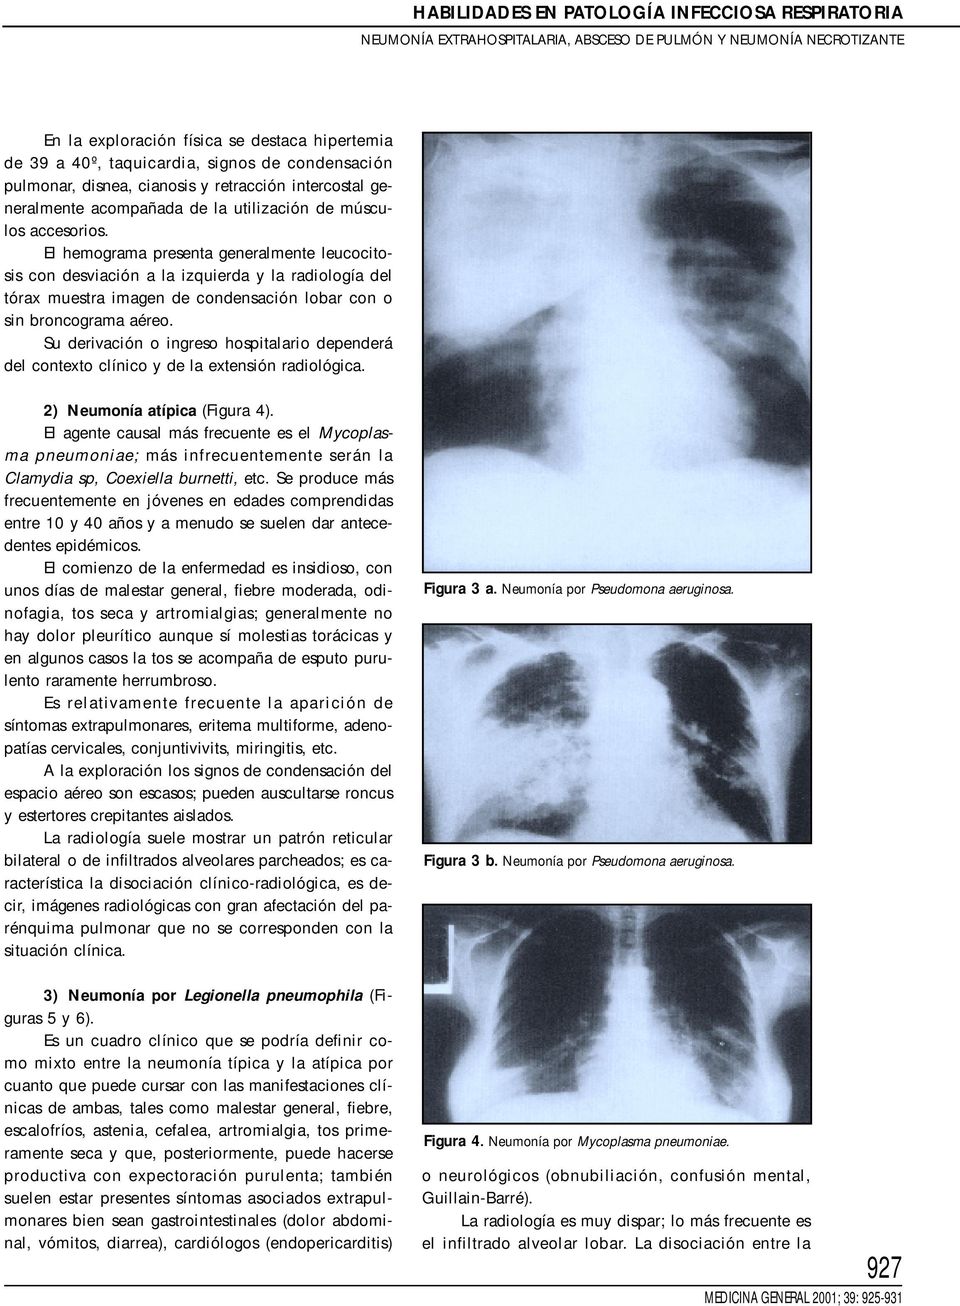 El hemograma presenta generalmente leucocitosis con desviación a la izquierda y la radiología del tórax muestra imagen de condensación lobar con o sin broncograma aéreo.